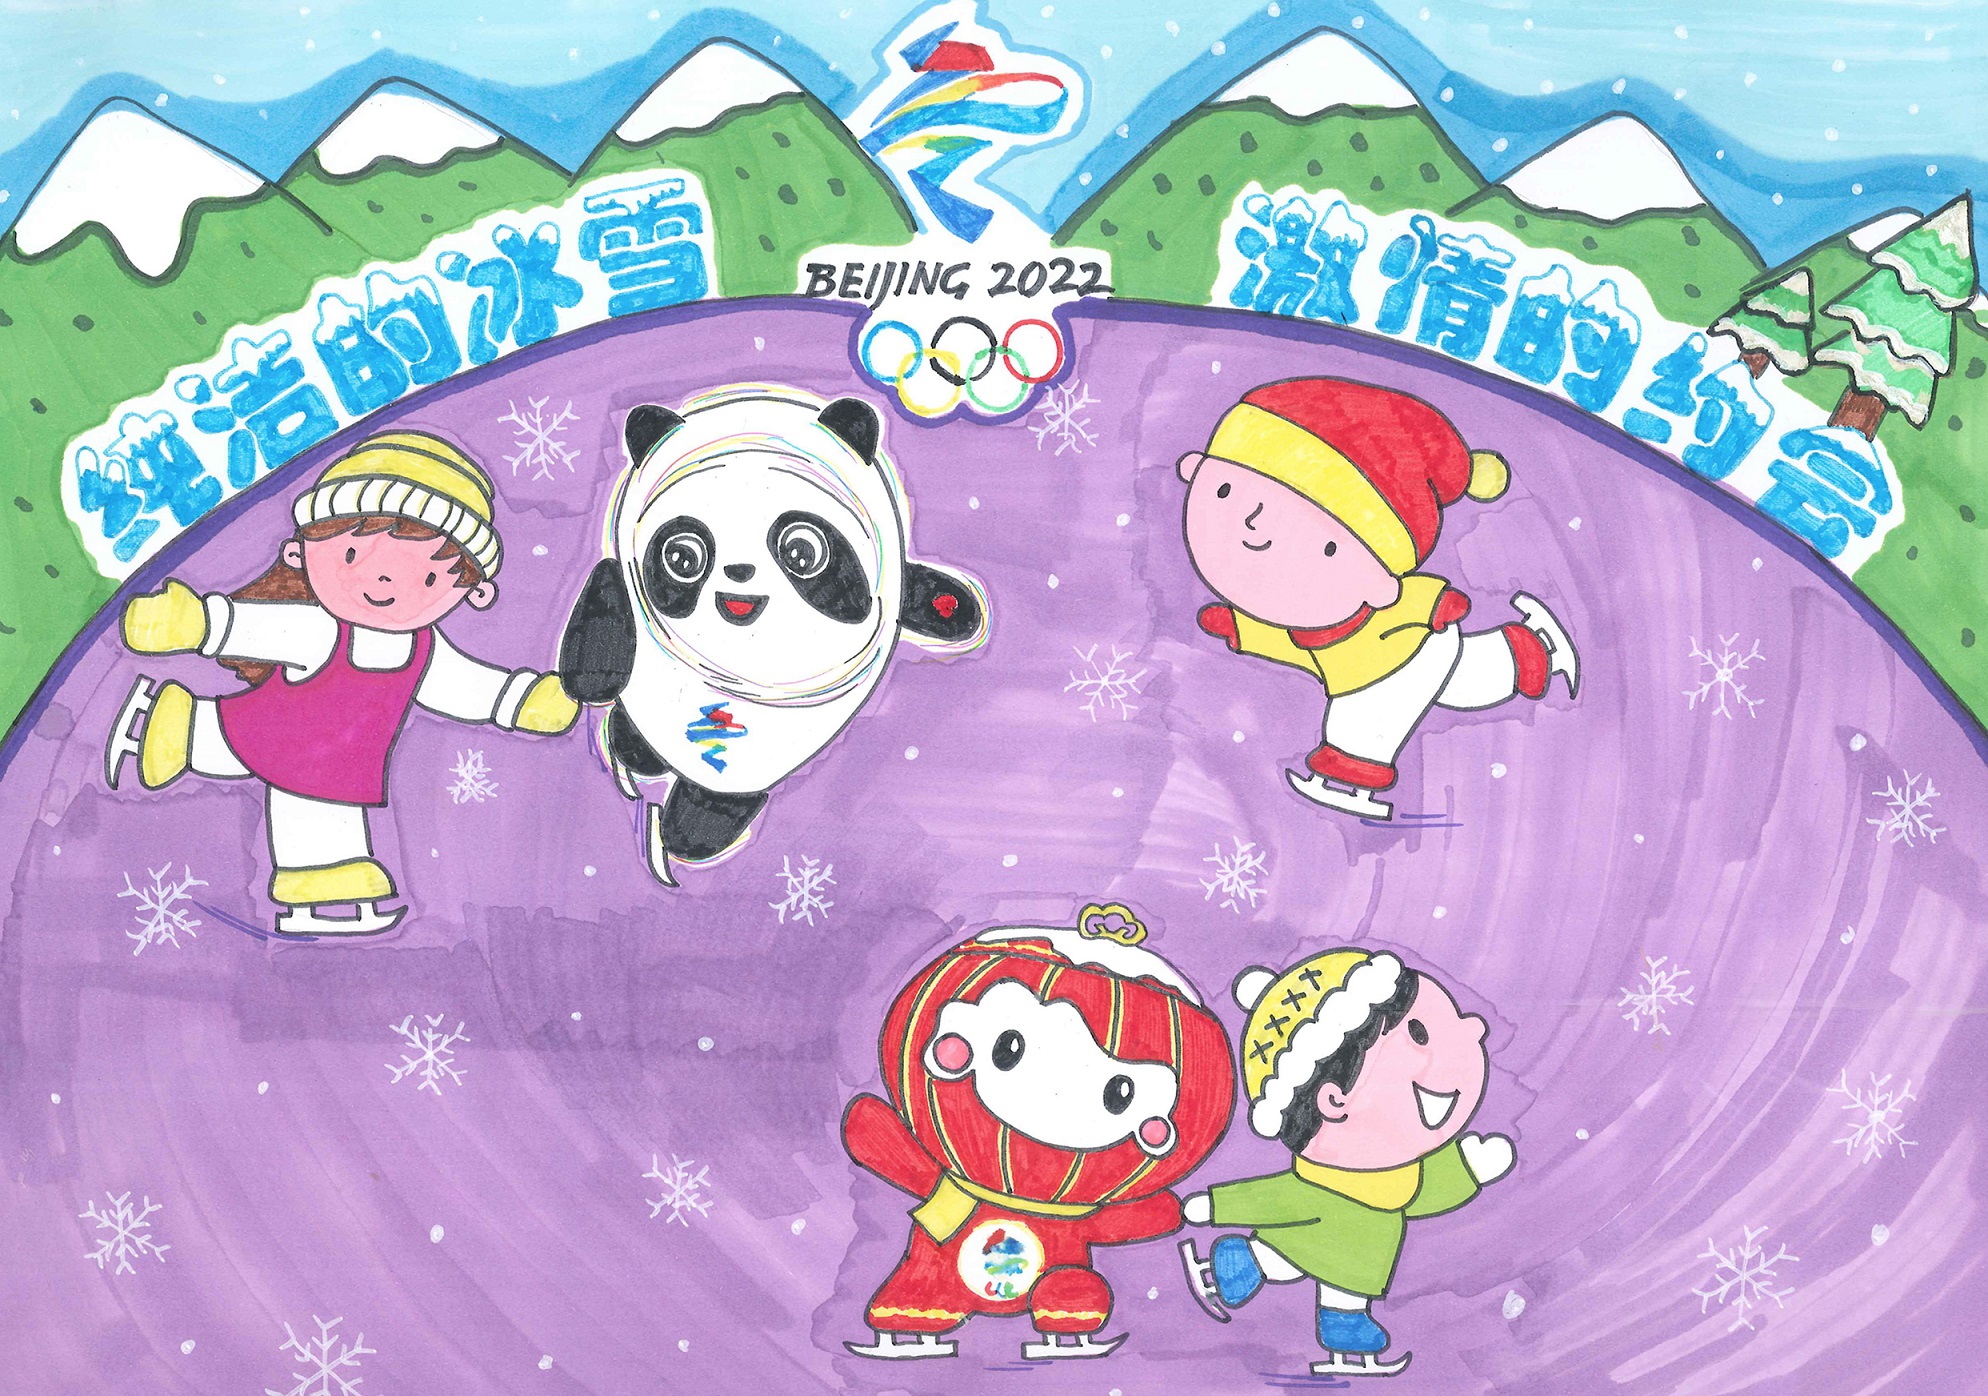 纯洁冰雪激情冬奥 Pure ice and snow, passionate Winter Olympics+王诗琪 Wang Shiqi